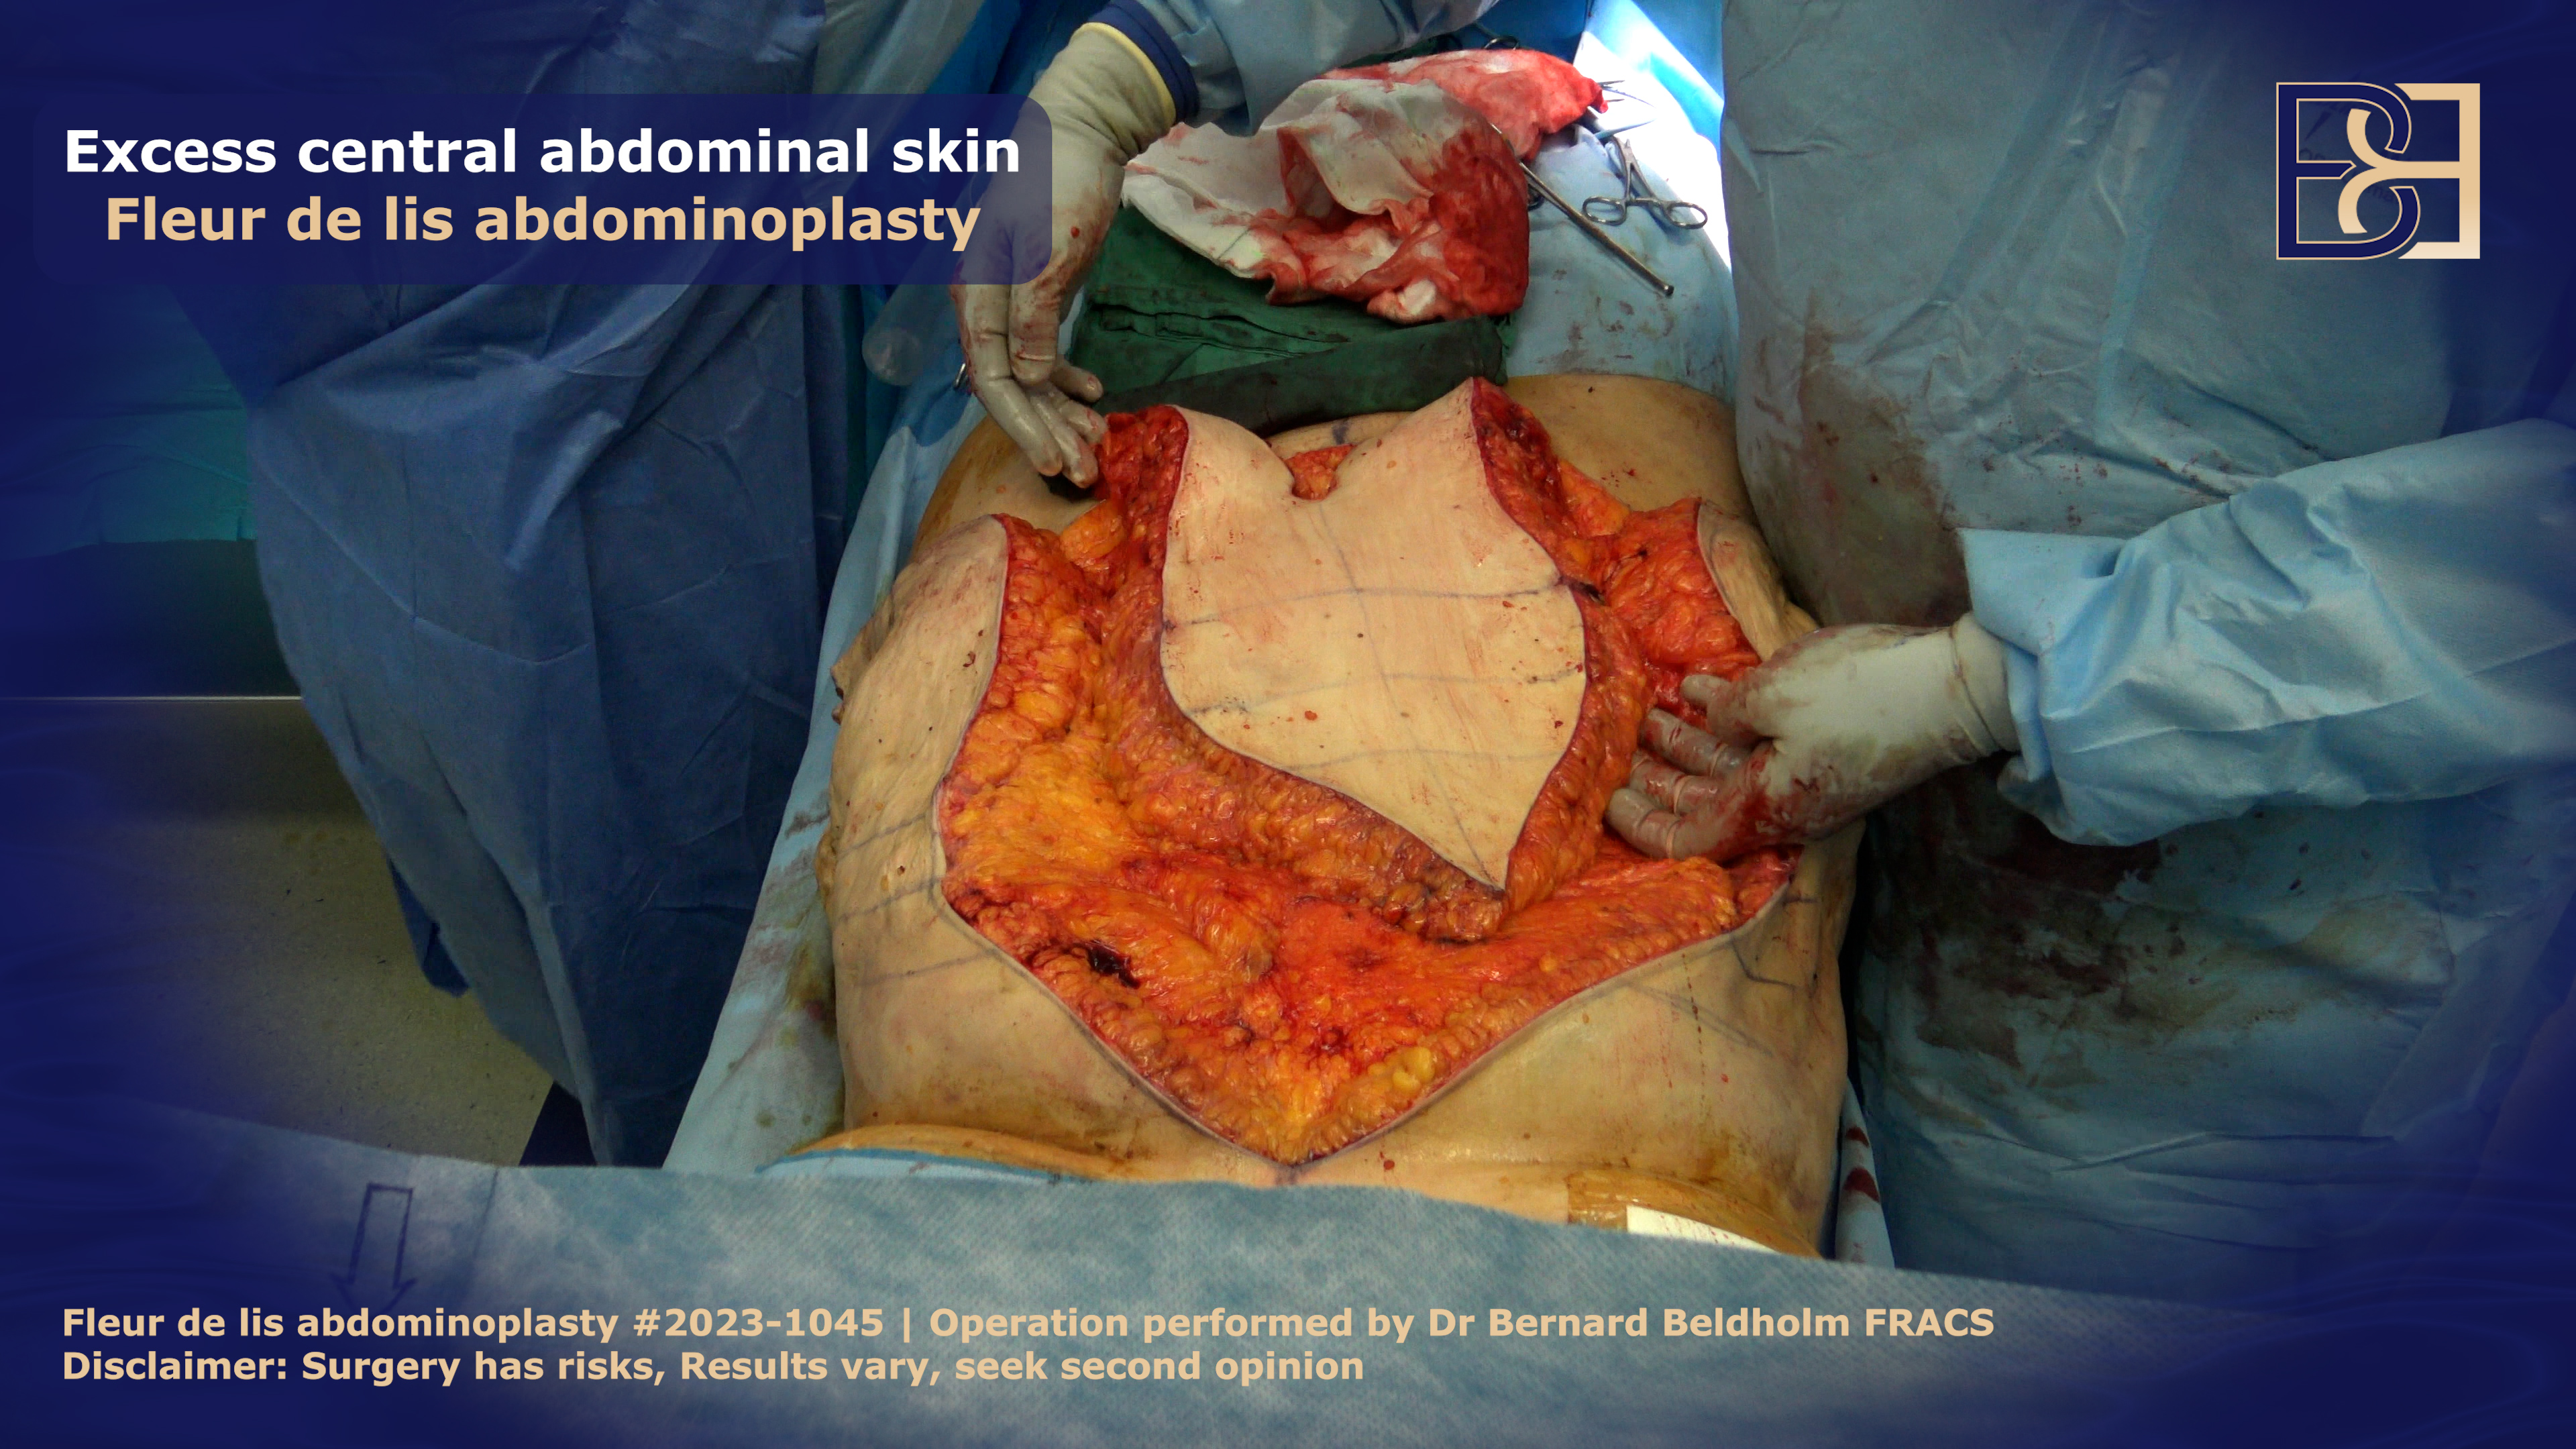 Excision of central abdominal skin in FDL surgery | Dr Bernard Beldholm